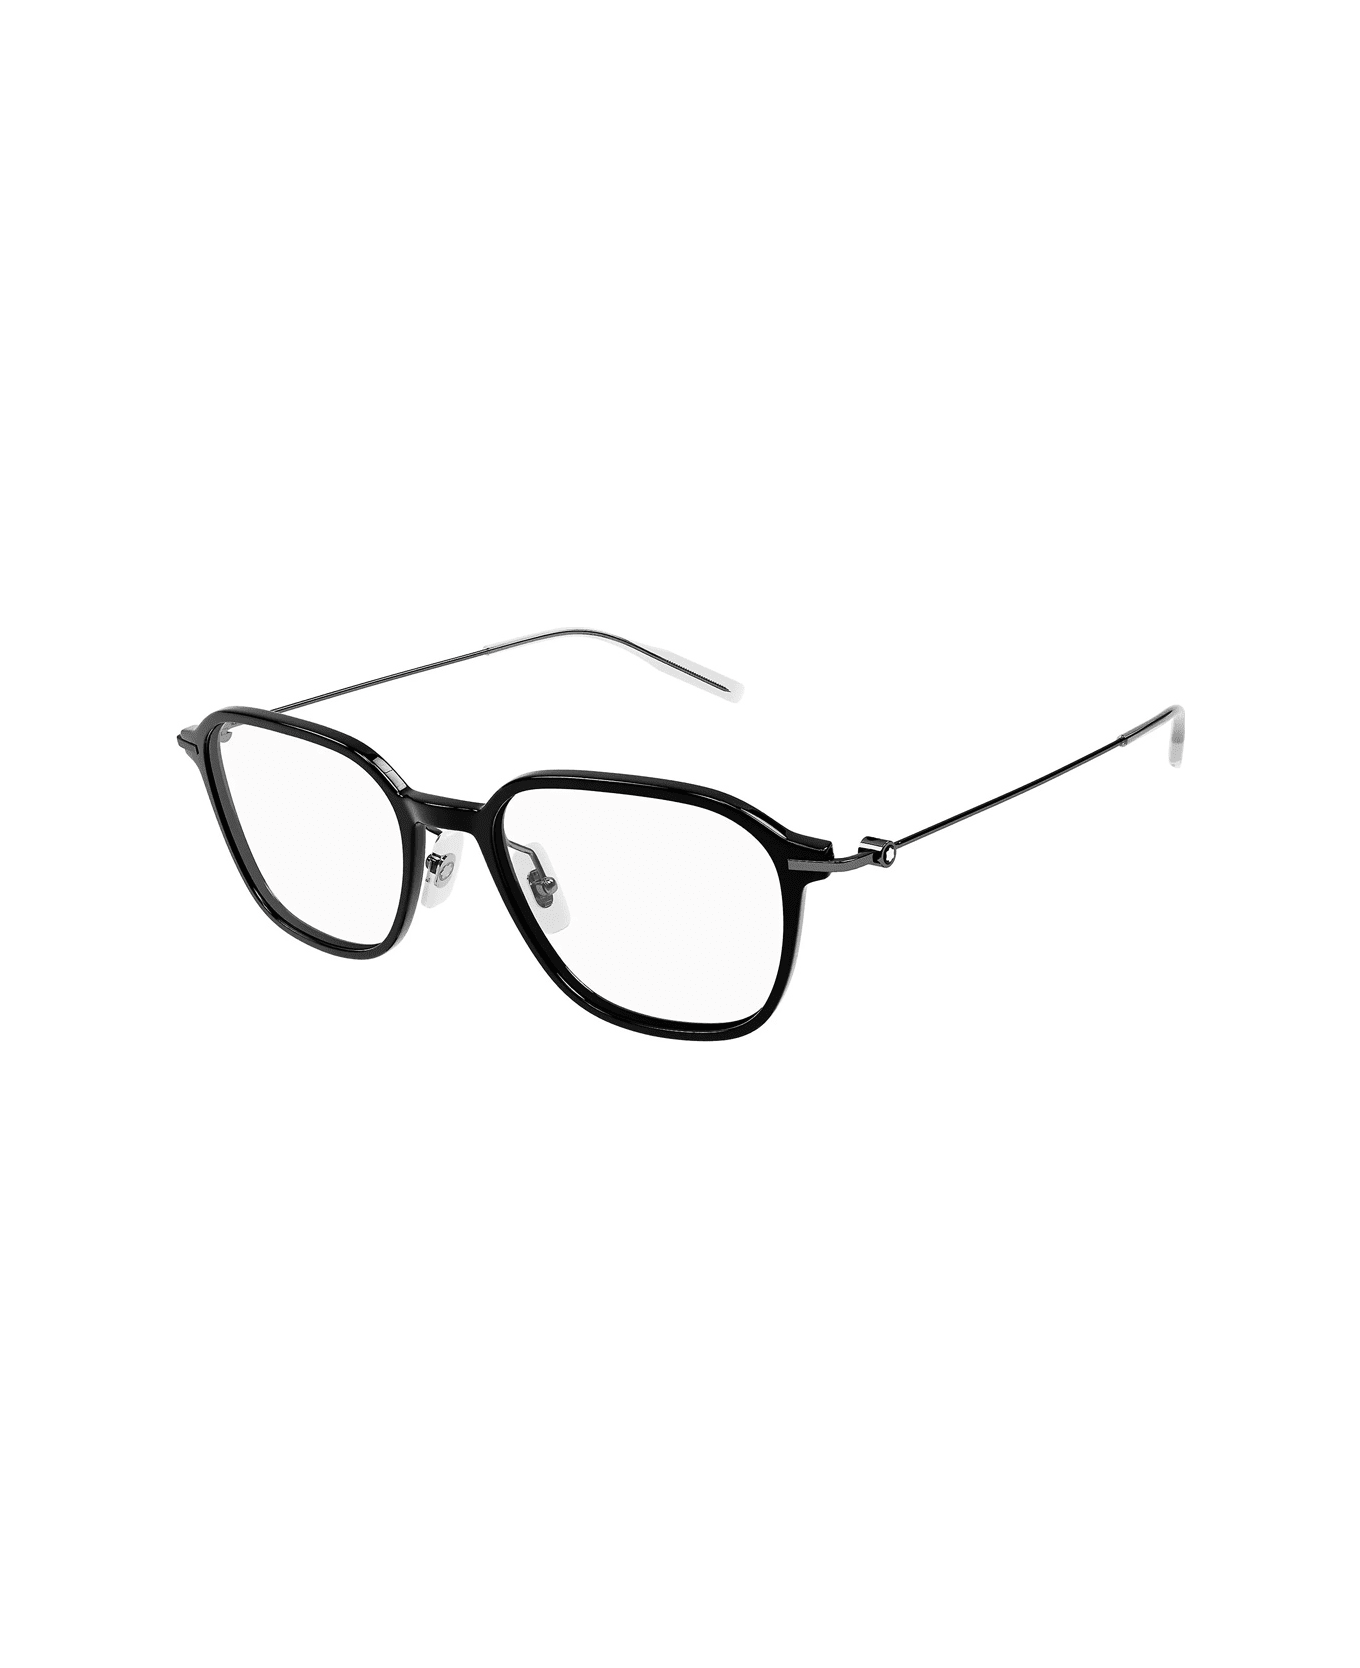 Montblanc Mb0207o Linea Established 001 Glasses - Nero アイウェア